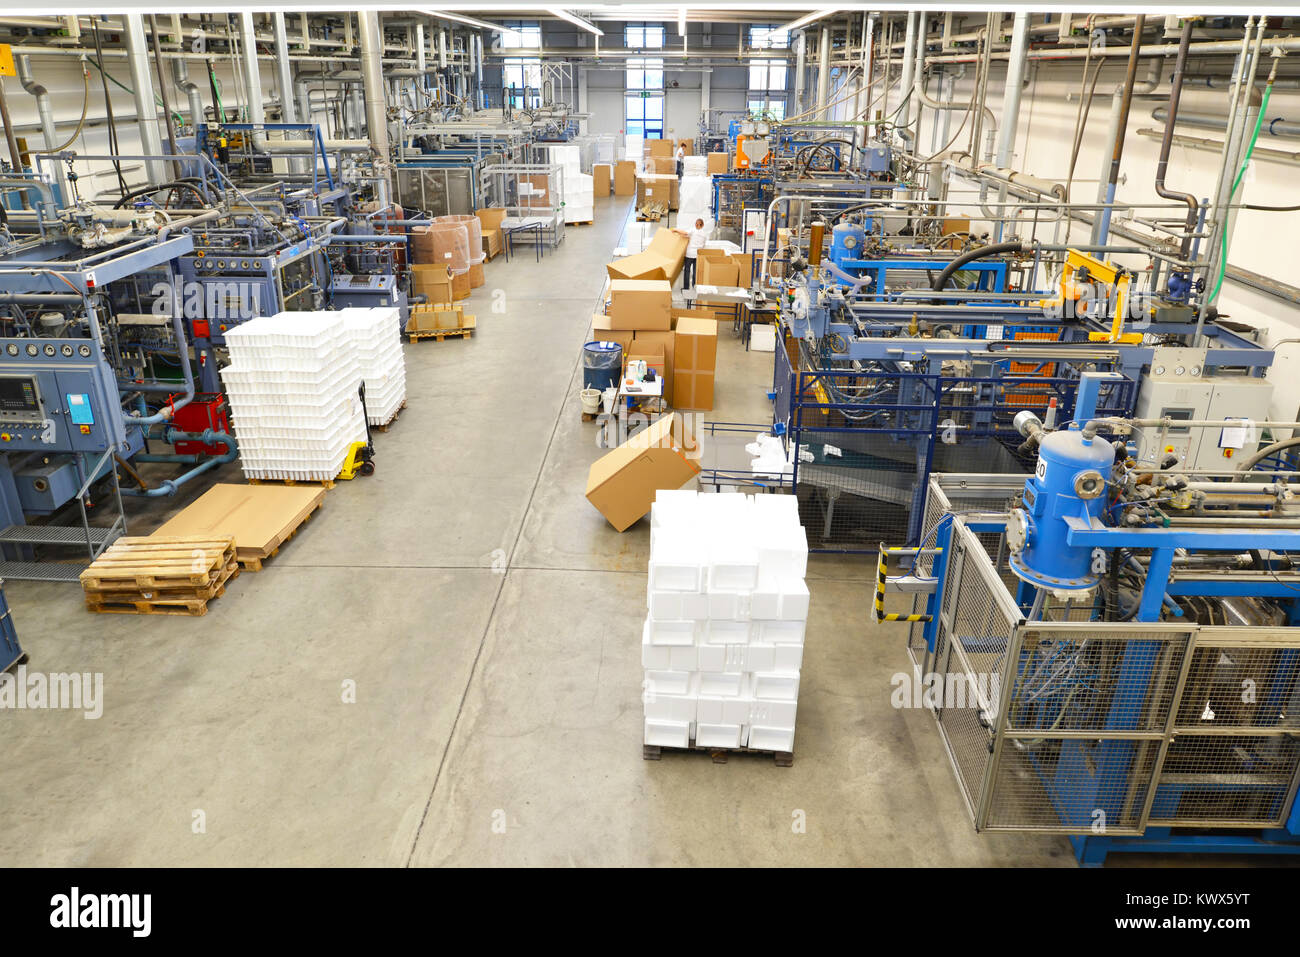 L'intérieur d'une entreprise industrielle avec des machines et autres  équipements techniques Photo Stock - Alamy